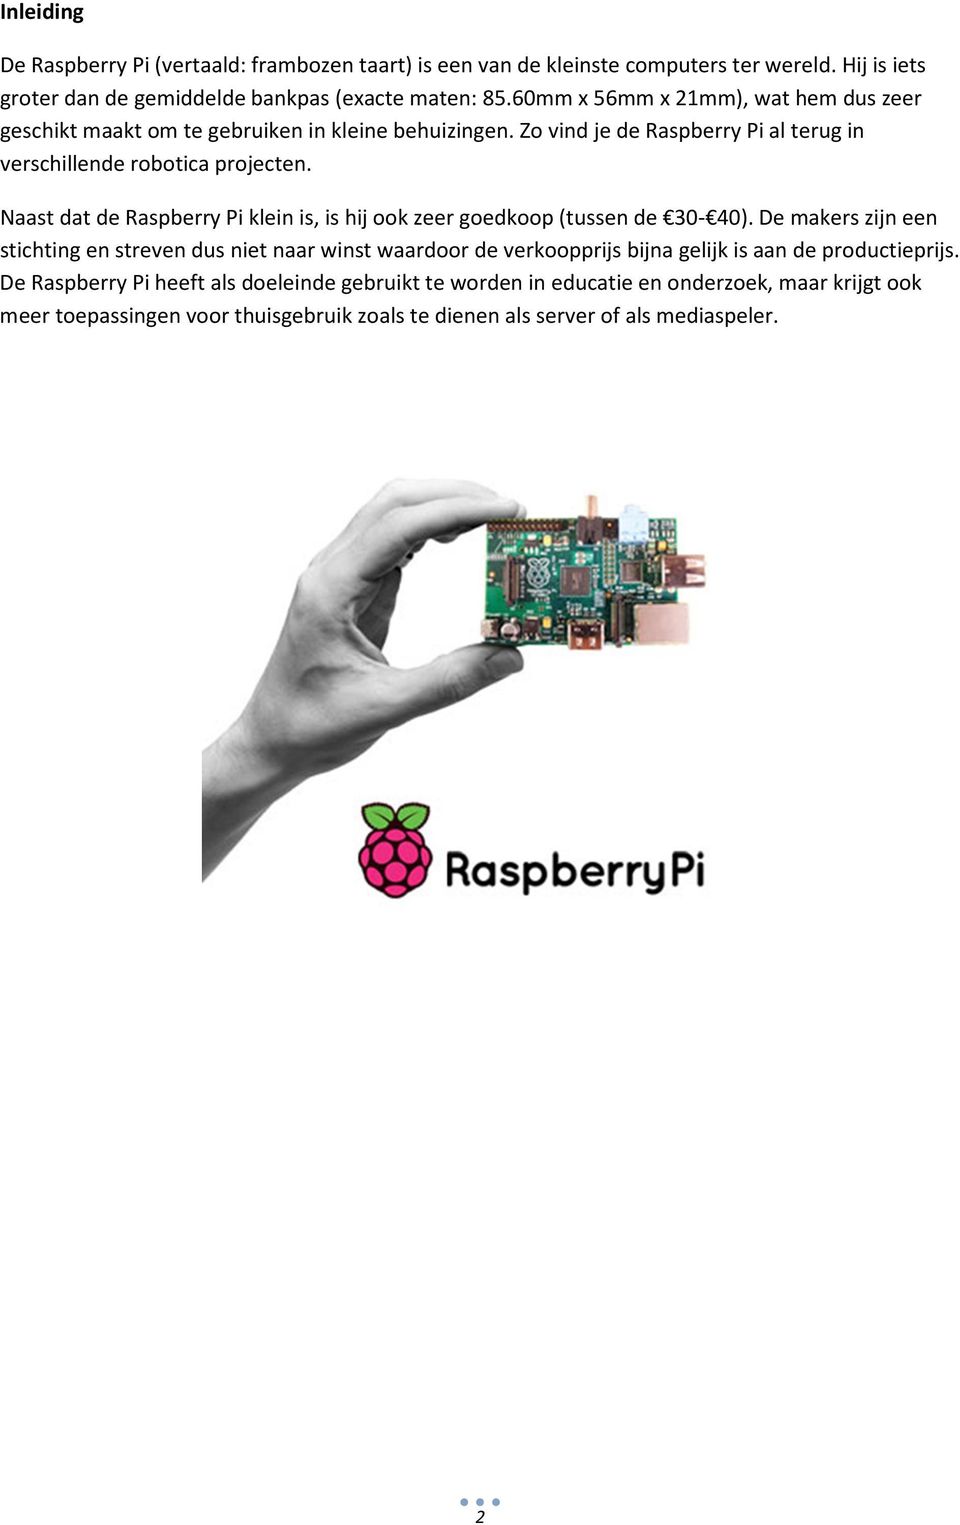 Naast dat de Raspberry Pi klein is, is hij ook zeer goedkoop (tussen de 30-40).